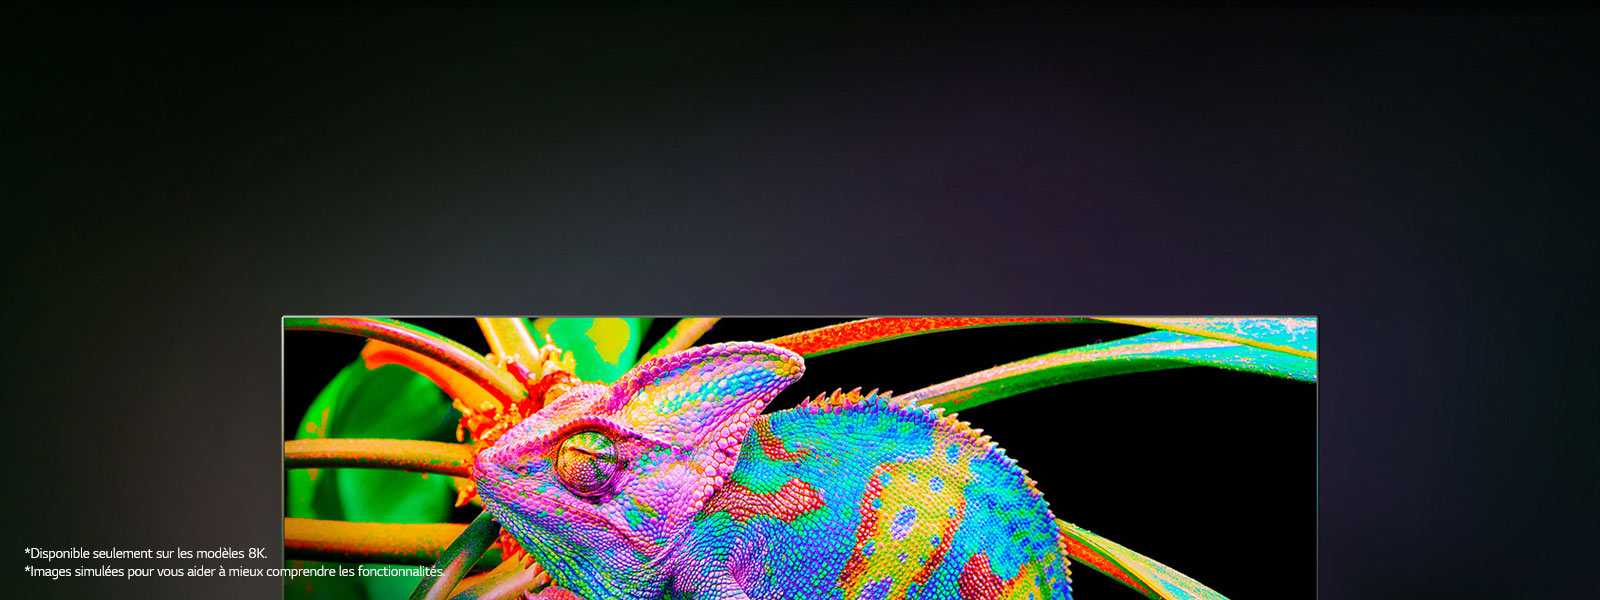 Il existe un téléviseur qui permet de zoomer sur des caméléons colorés pour observer les détails de leur peau.